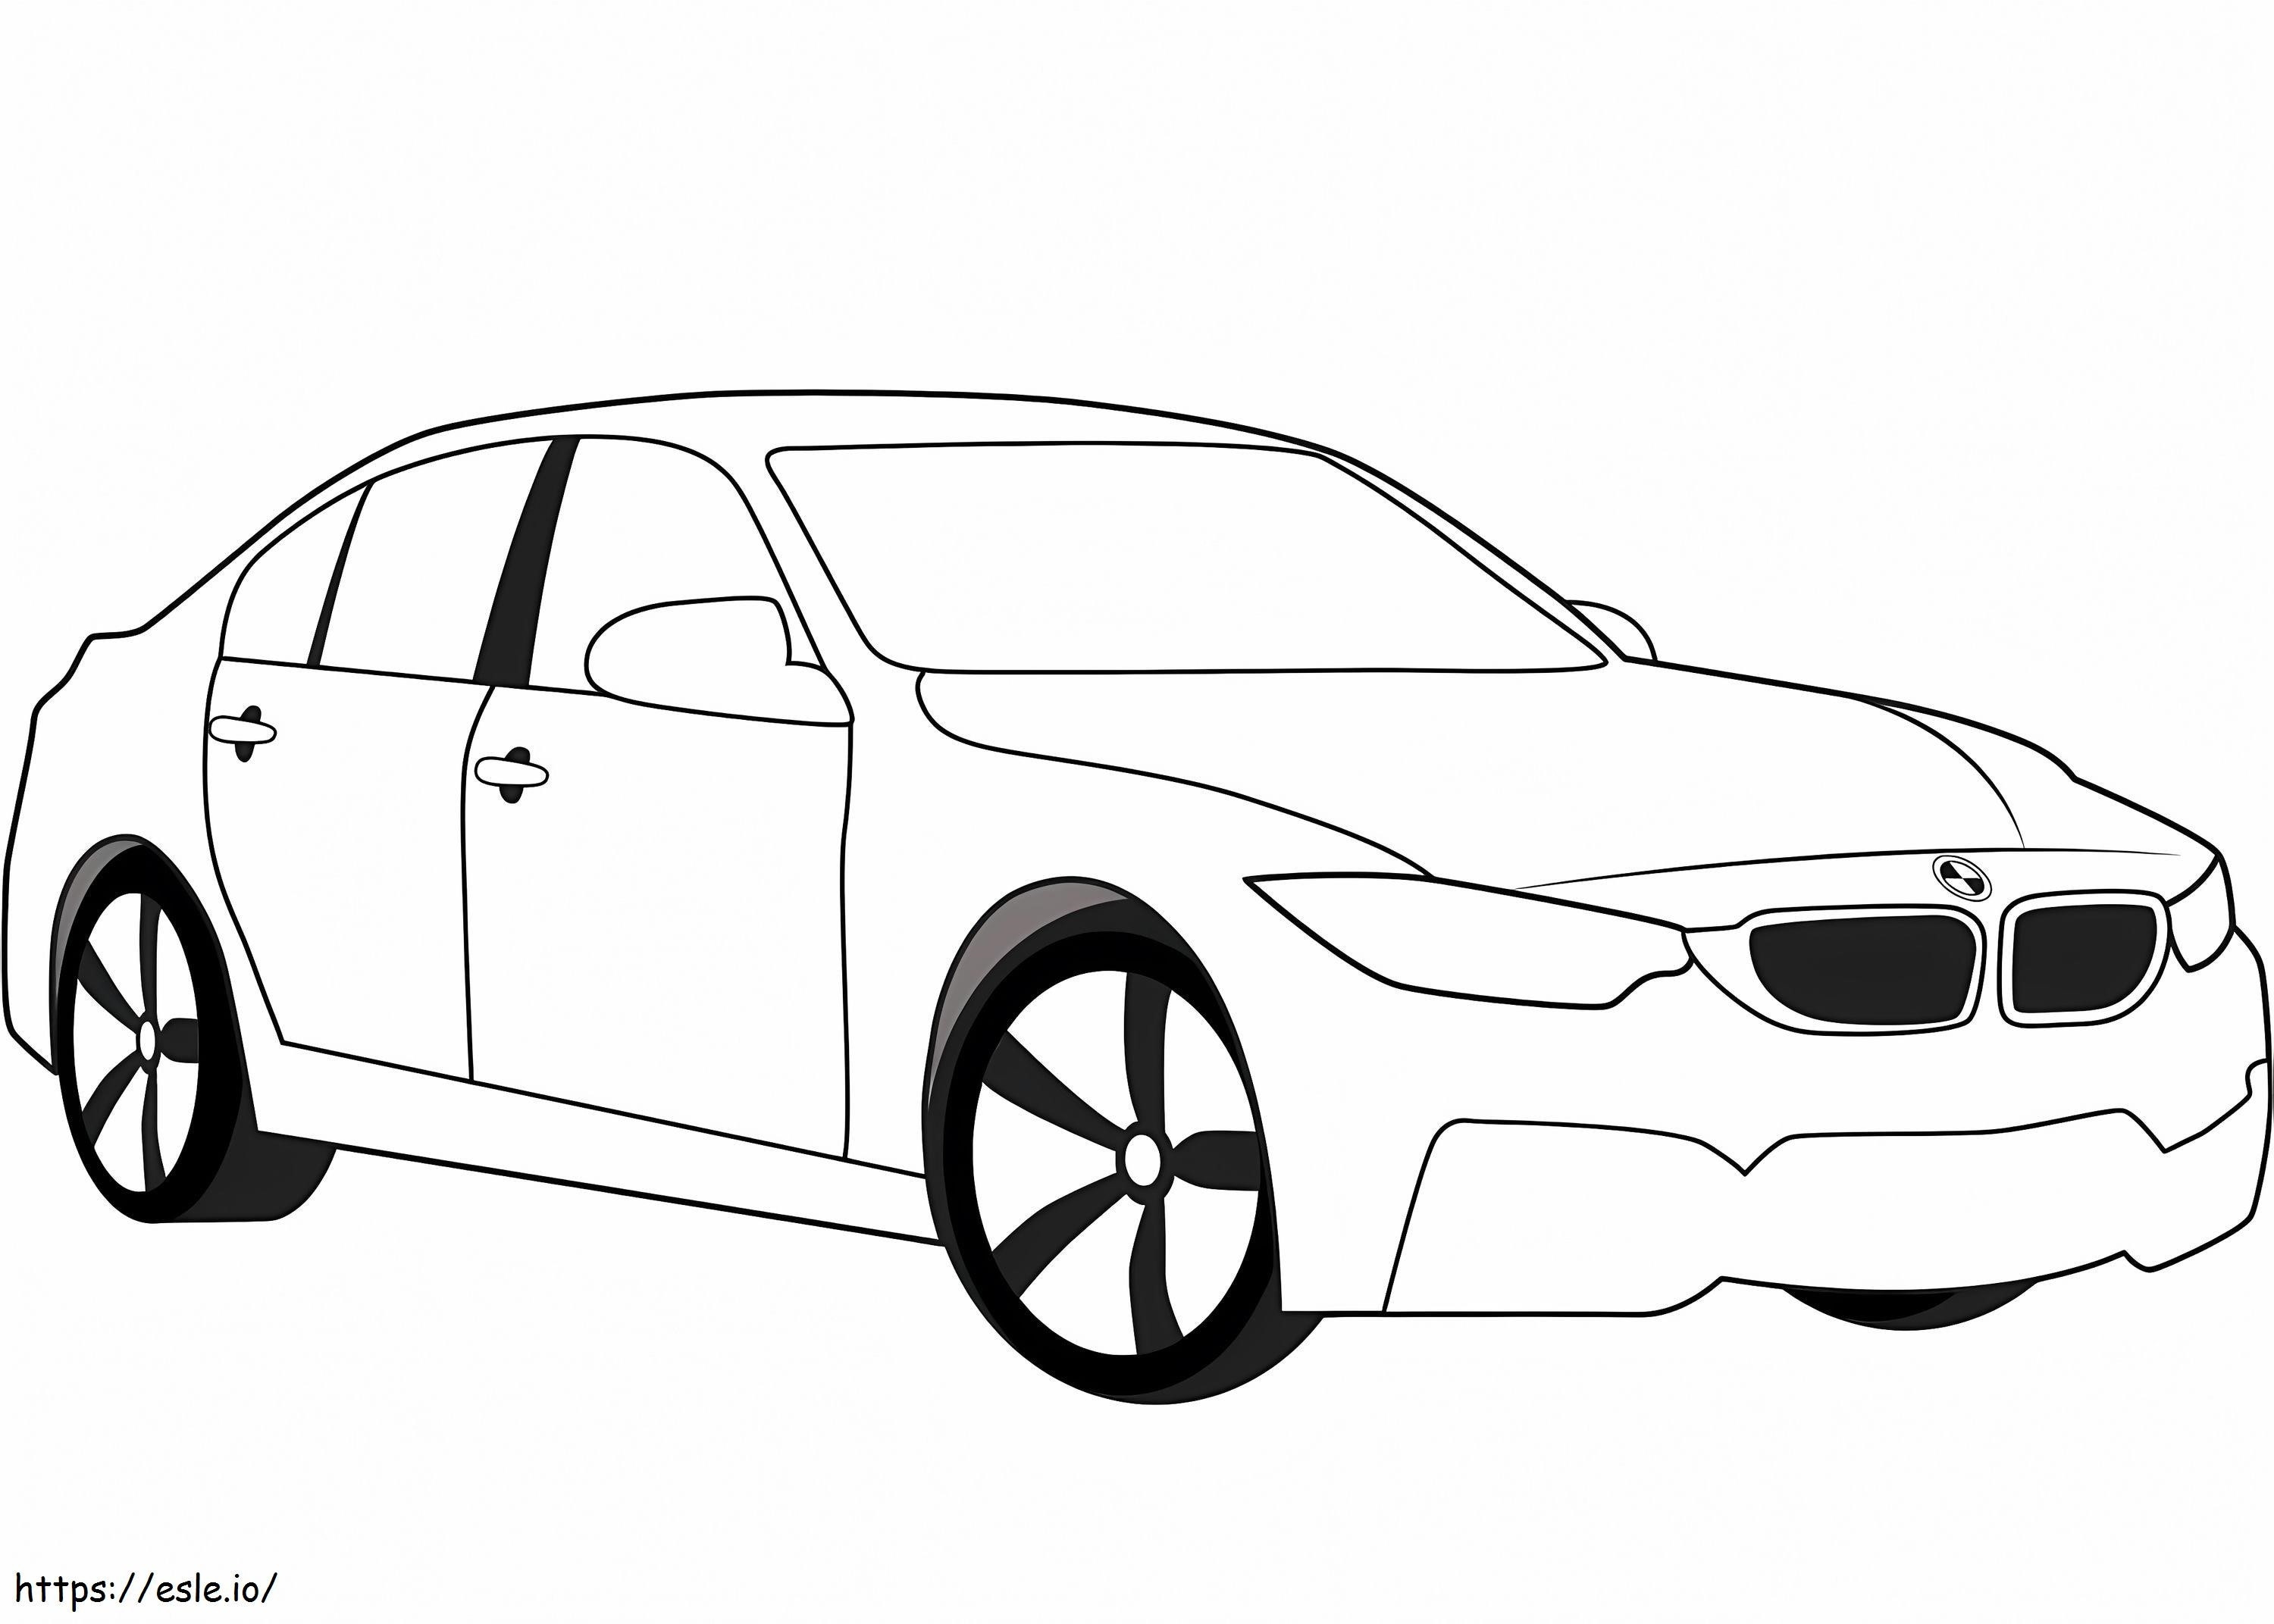 Coloriage BMW M3 à imprimer dessin